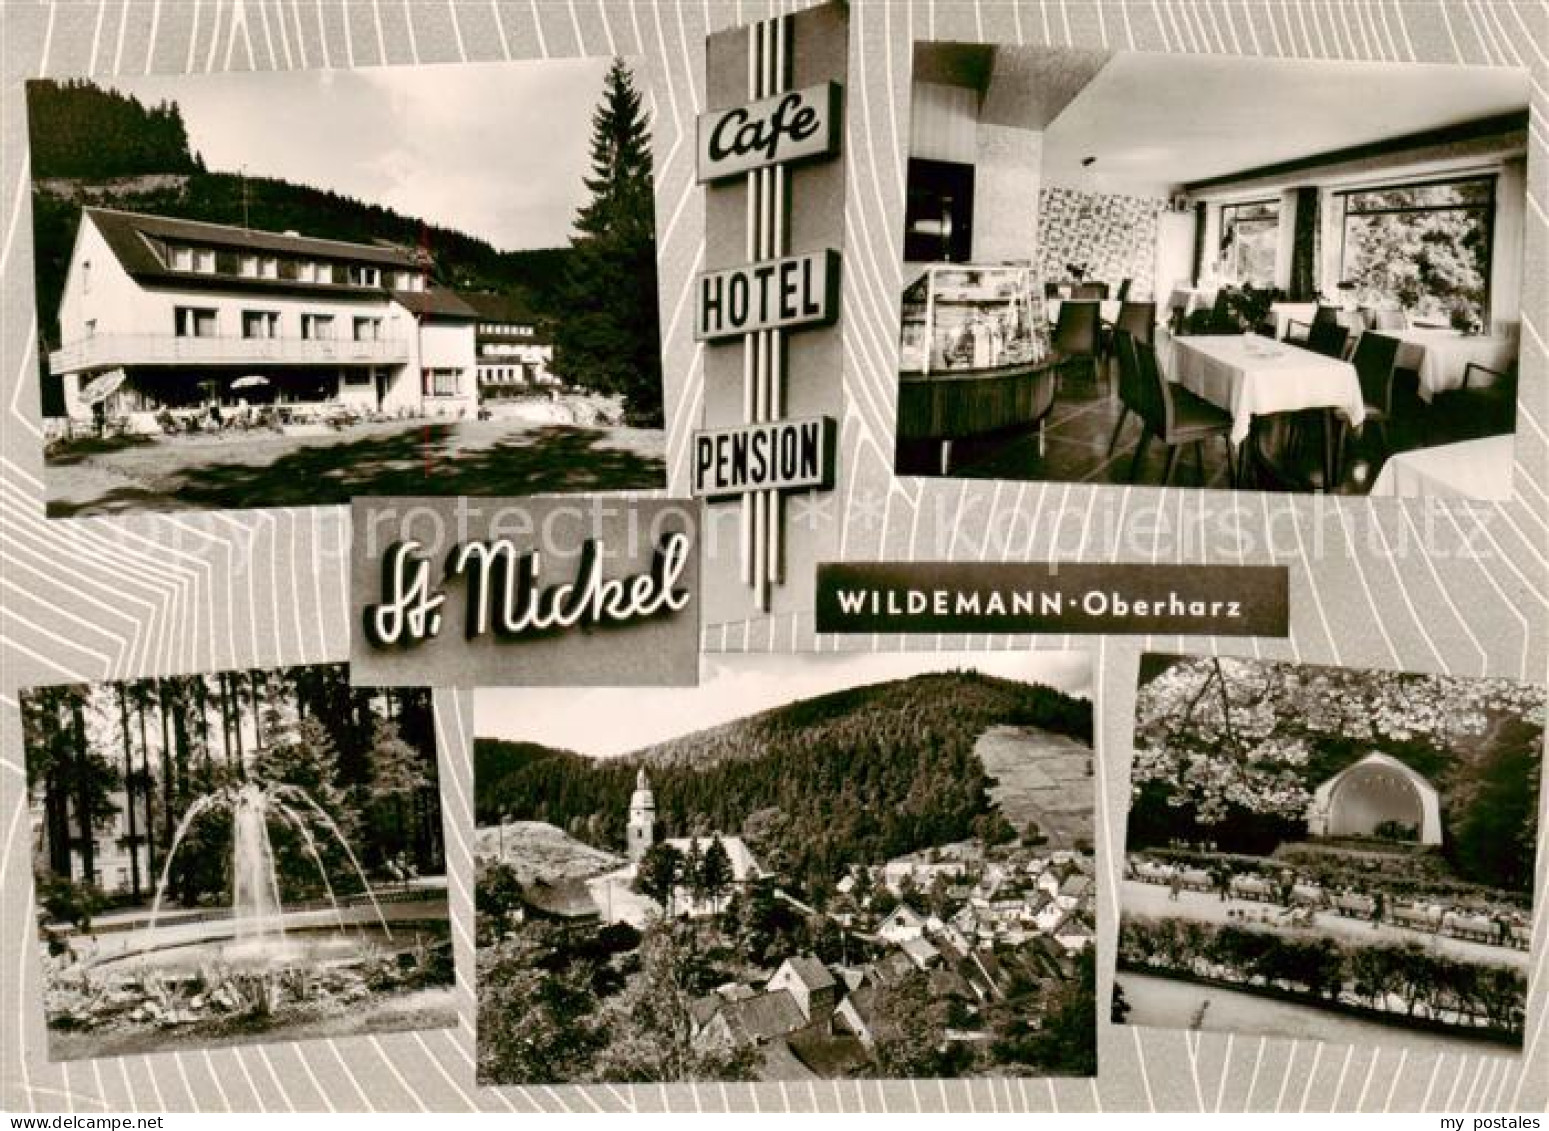 73852260 Wildemann Harz Cafe Hotel Pension St. Nickel Springbrunnen Konzertpavil - Wildemann